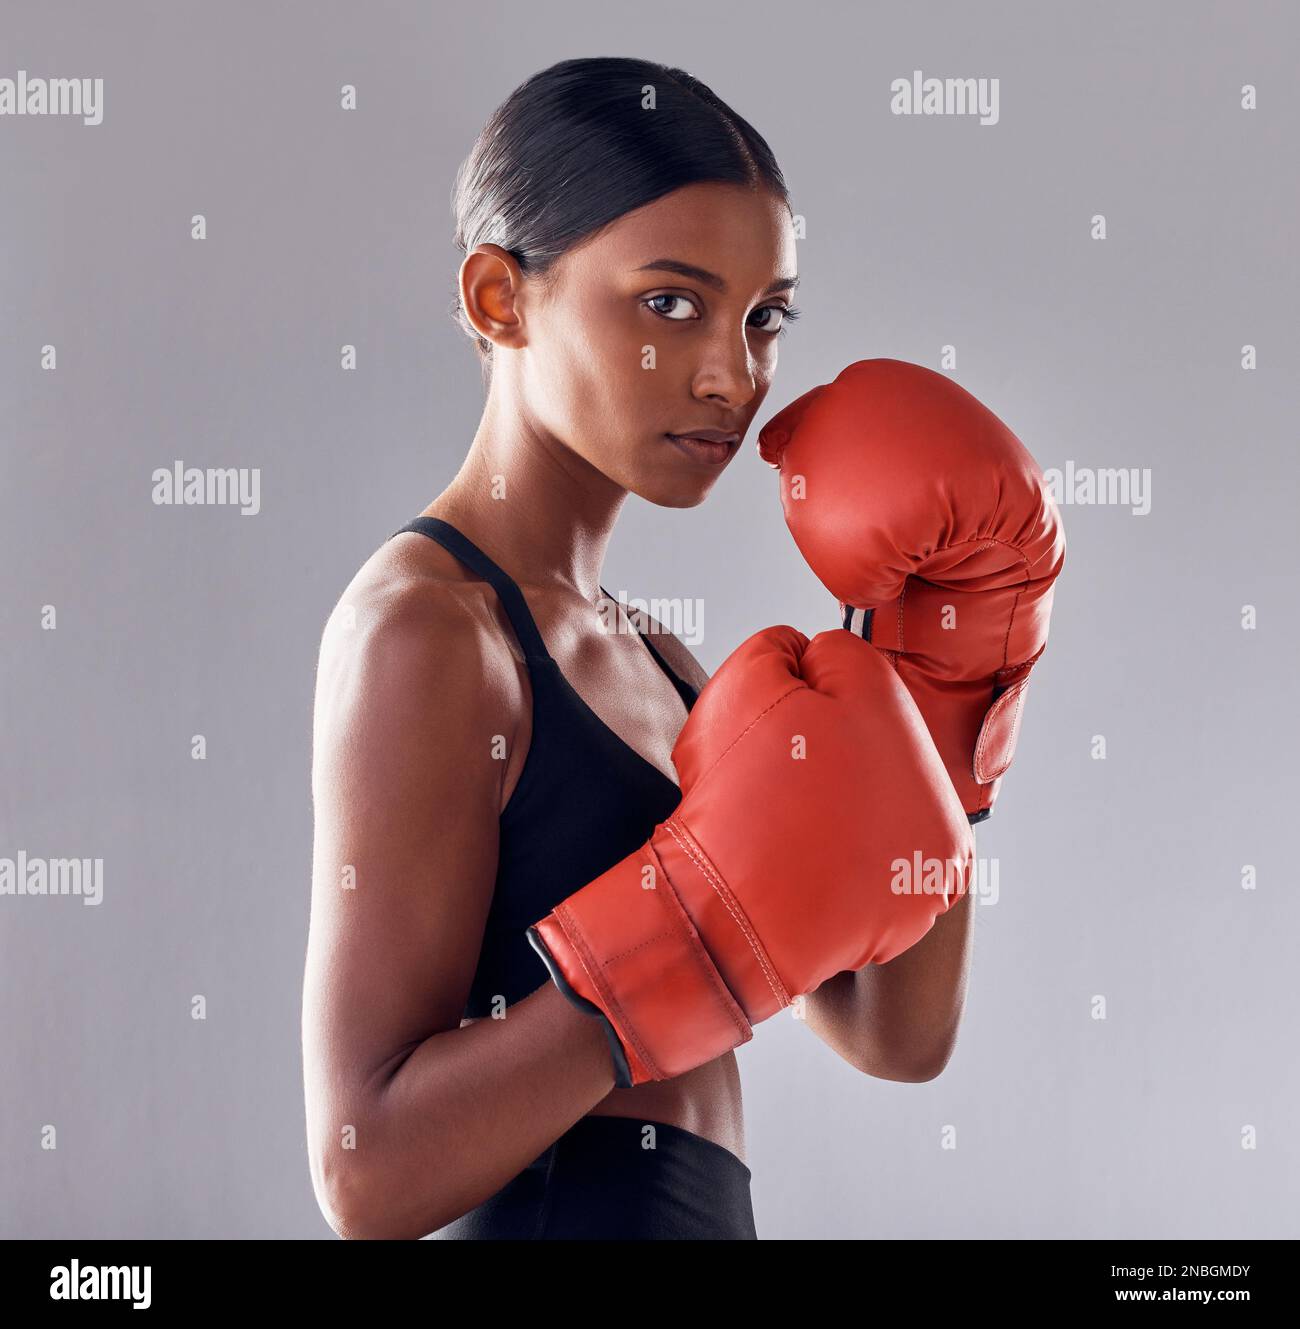 Boxeo, guantes y retrato de mujer en estudio para ejercicio deportivo, musculatura fuerte o entrenamiento mma. Boxeador femenino indio, entrenamiento y lucha por el puño Foto de stock